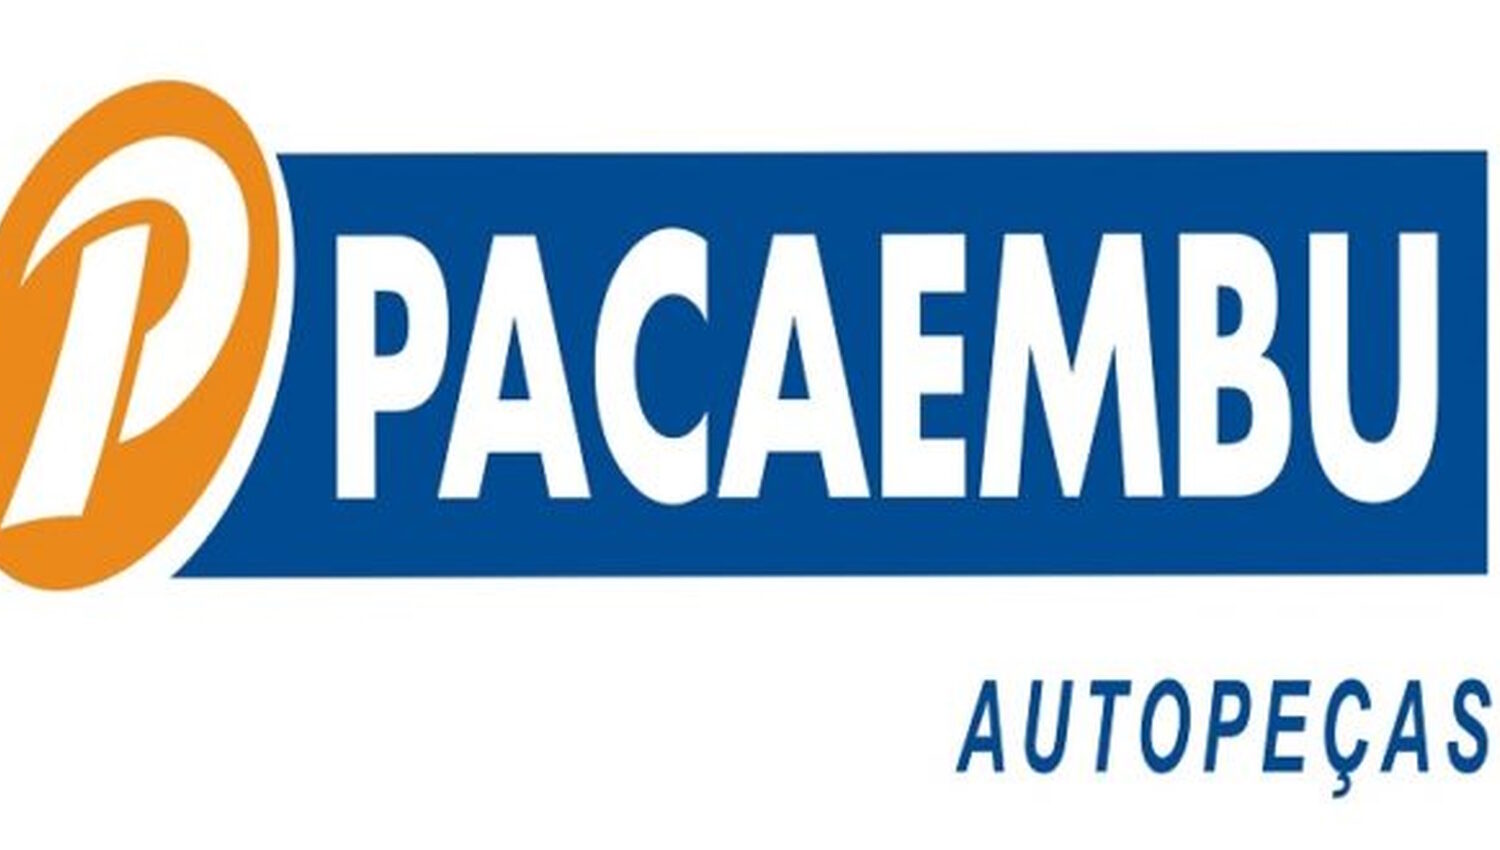 Pacaembu Autopeças abre vagas para Auxiliar de Vendas e Vendedor